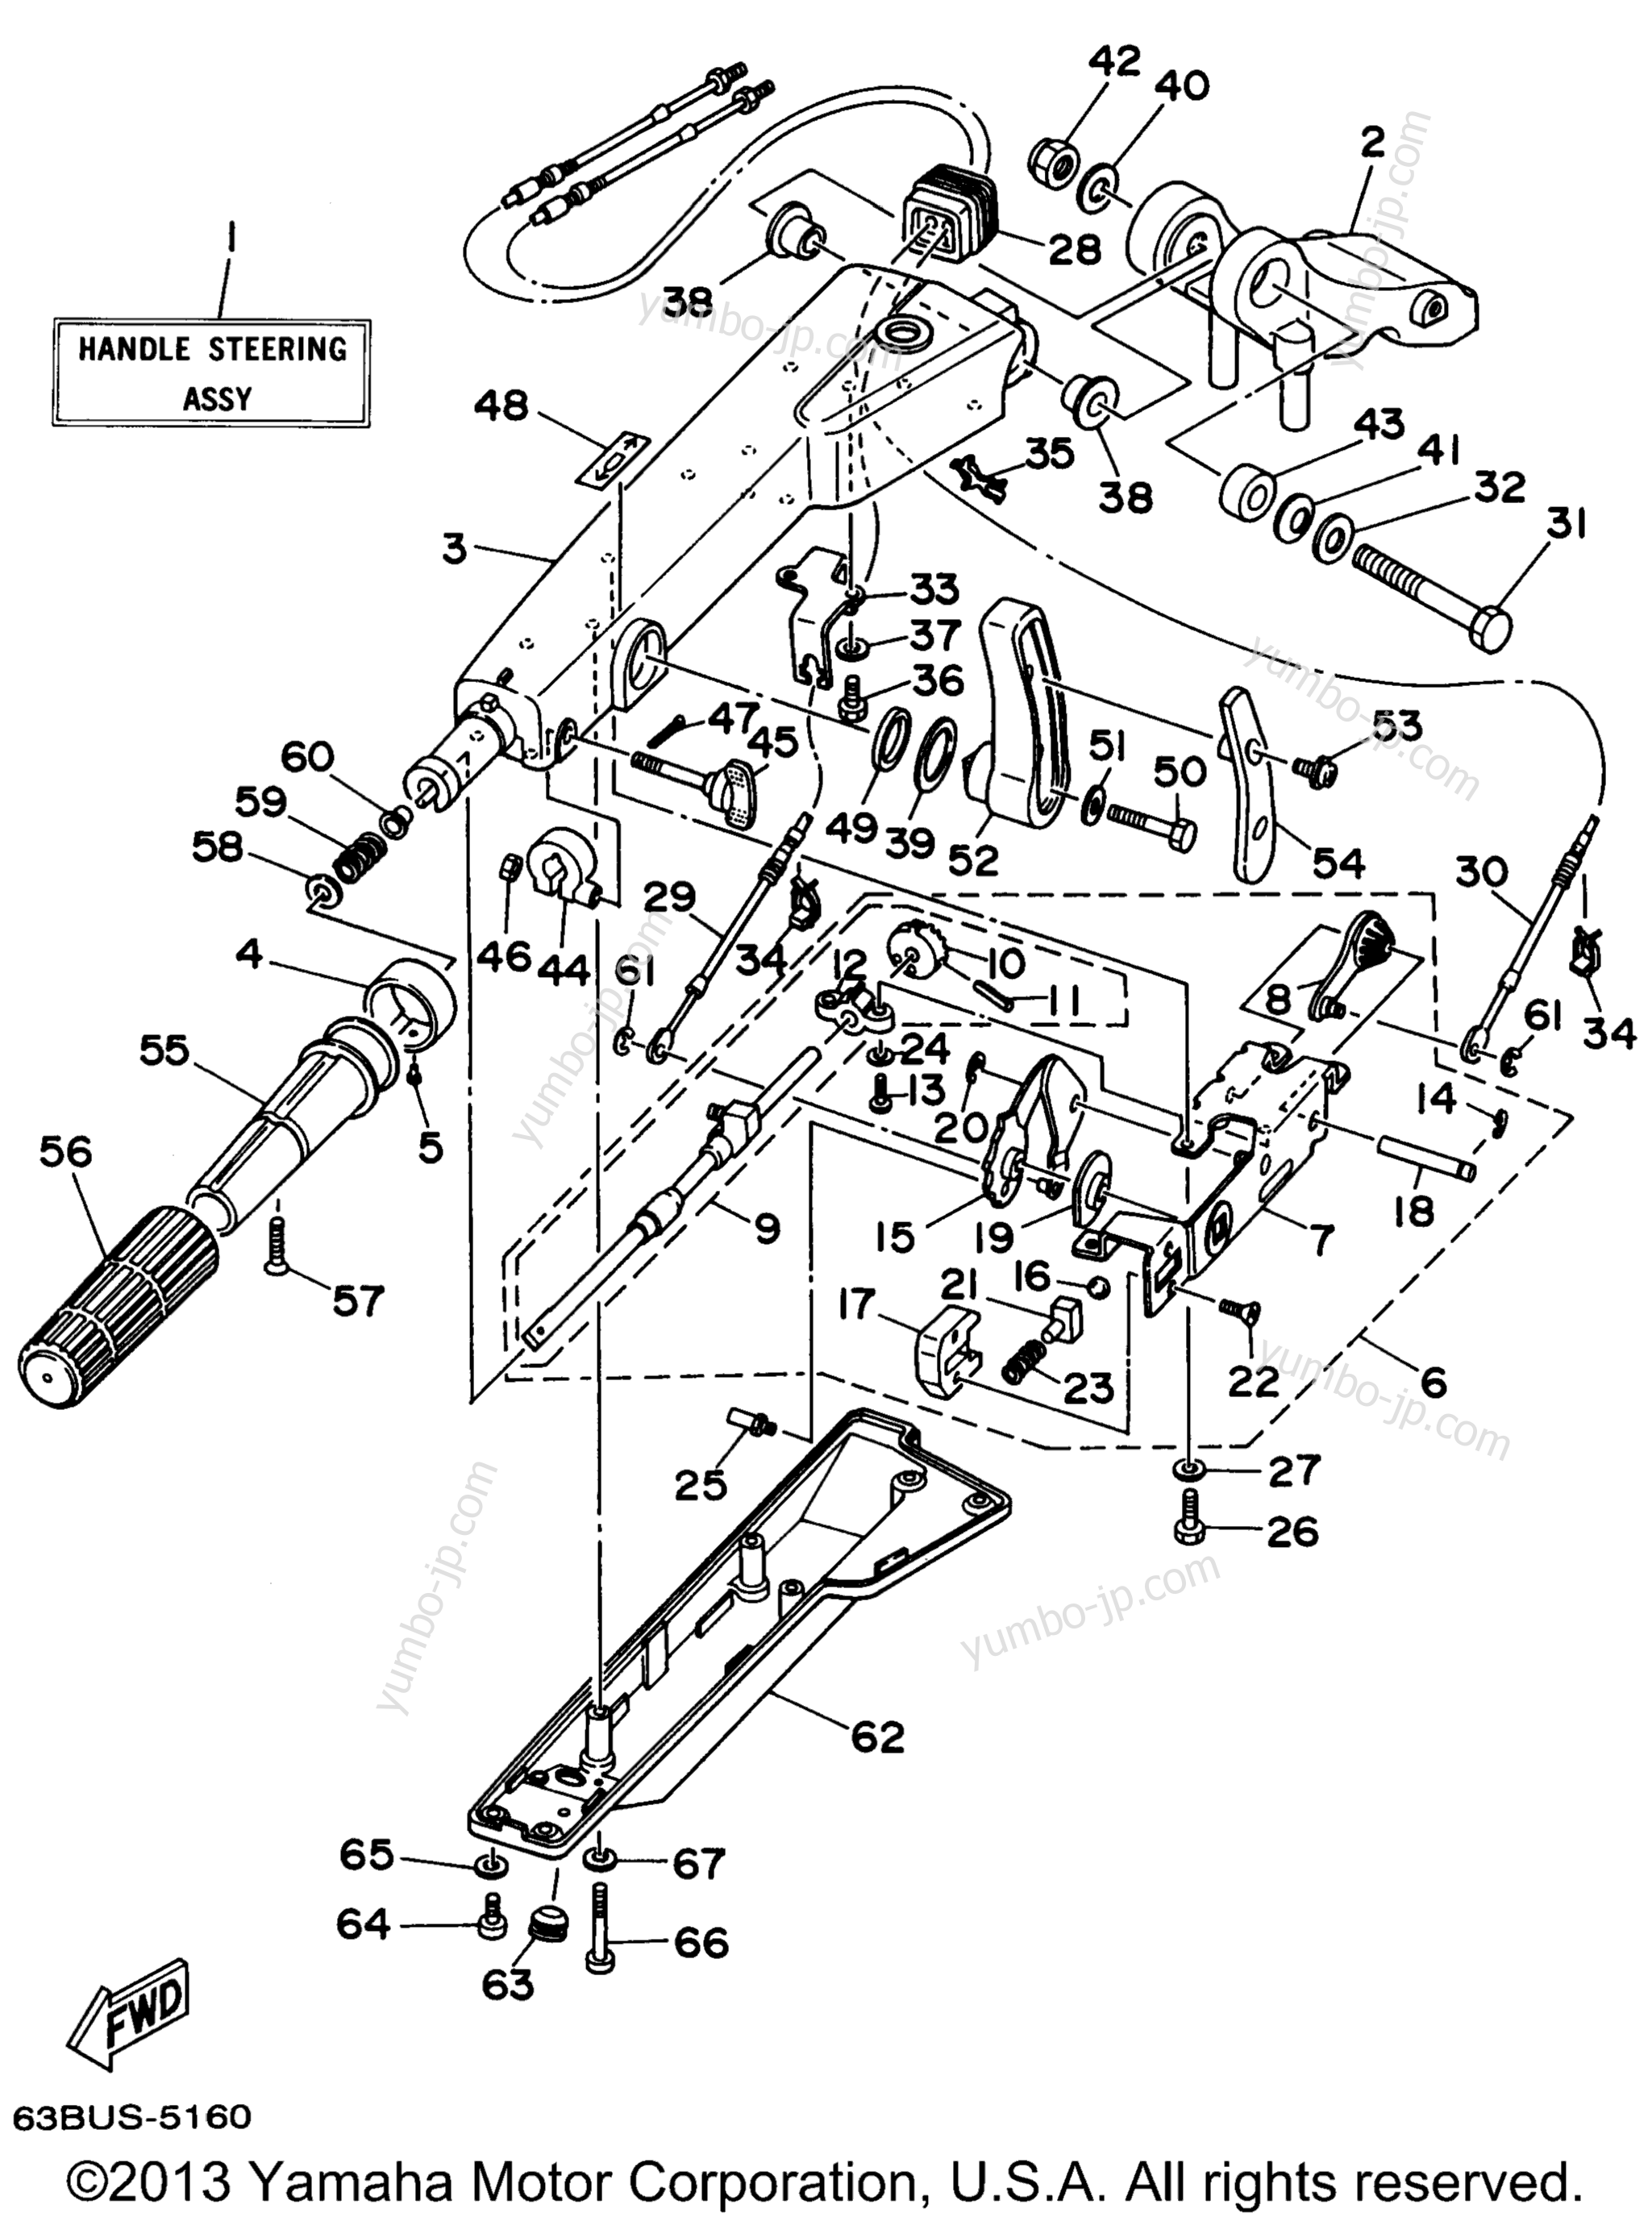 Steering для лодочных моторов YAMAHA 50EJRX (40EJRX) 1999 г.